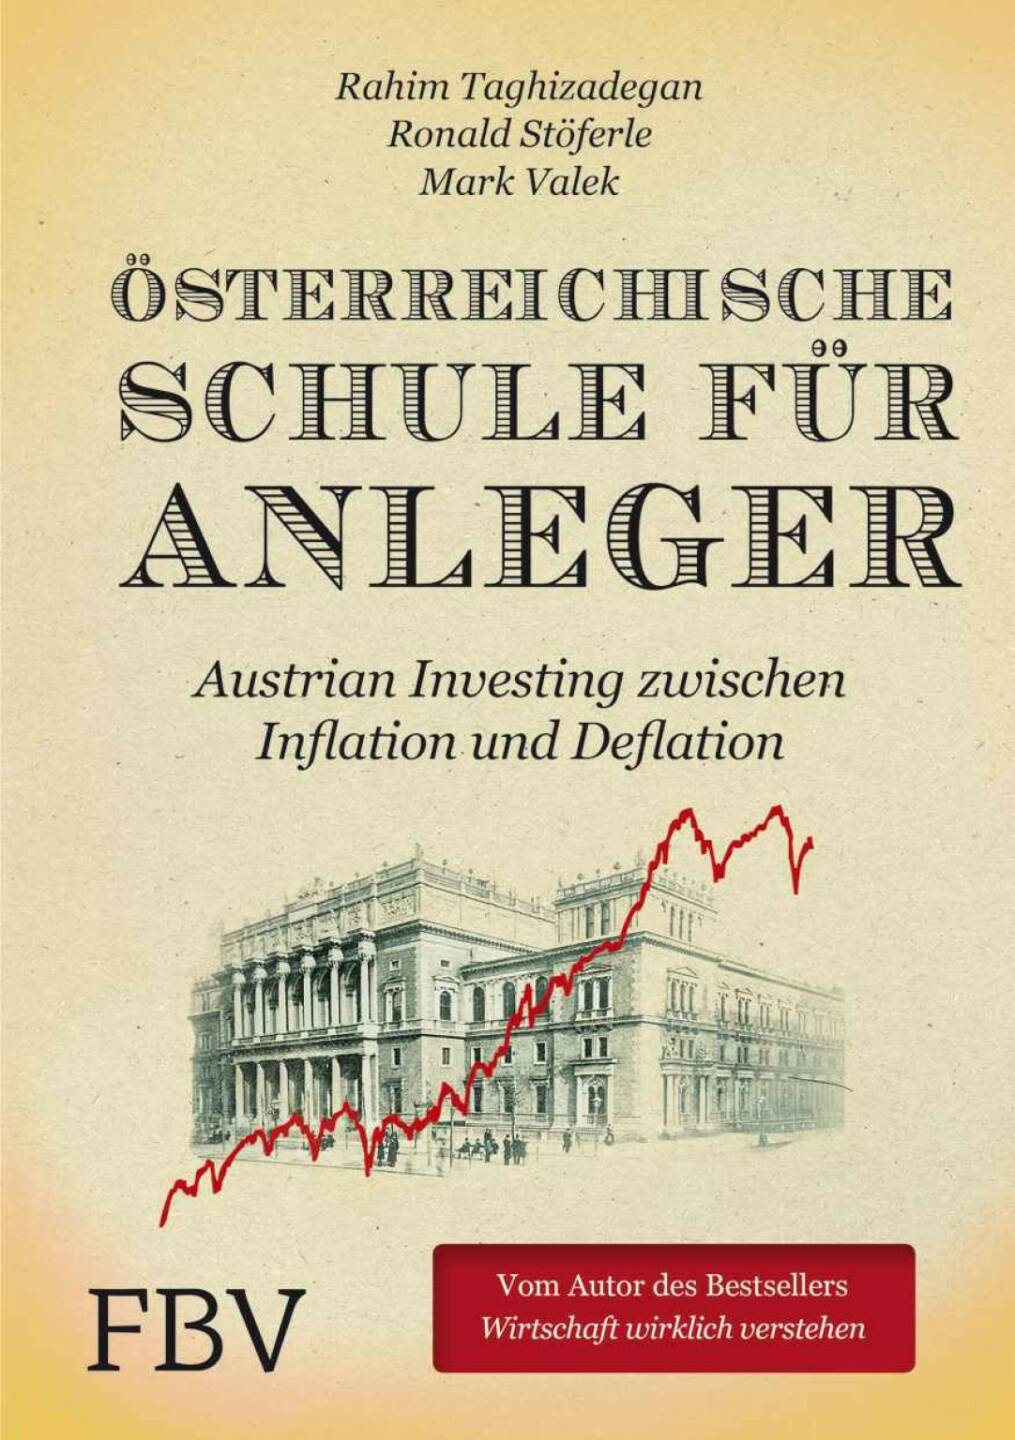 Ronald Stöferle: Eindeutig das Cover unseres Buches…das 1. Buch zum Thema „Austrian Investing“ und gleich ein Bestseller in Ö, CH und GER!!